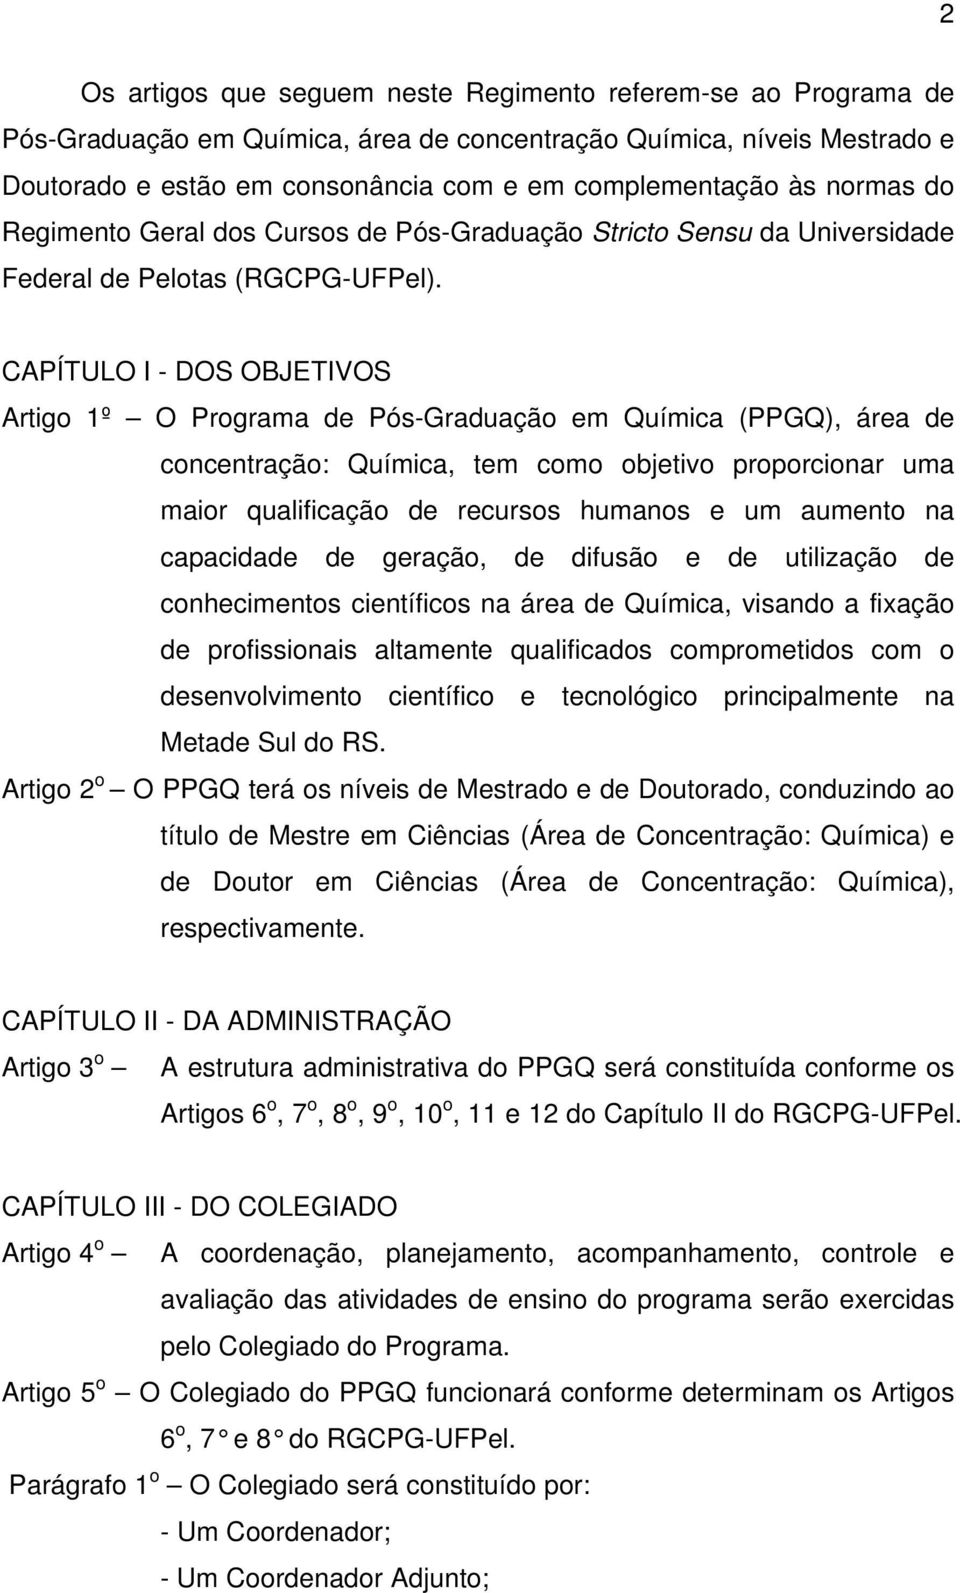 CAPÍTULO I - DOS OBJETIVOS Artigo 1º O Programa de Pós-Graduação em Química (PPGQ), área de concentração: Química, tem como objetivo proporcionar uma maior qualificação de recursos humanos e um